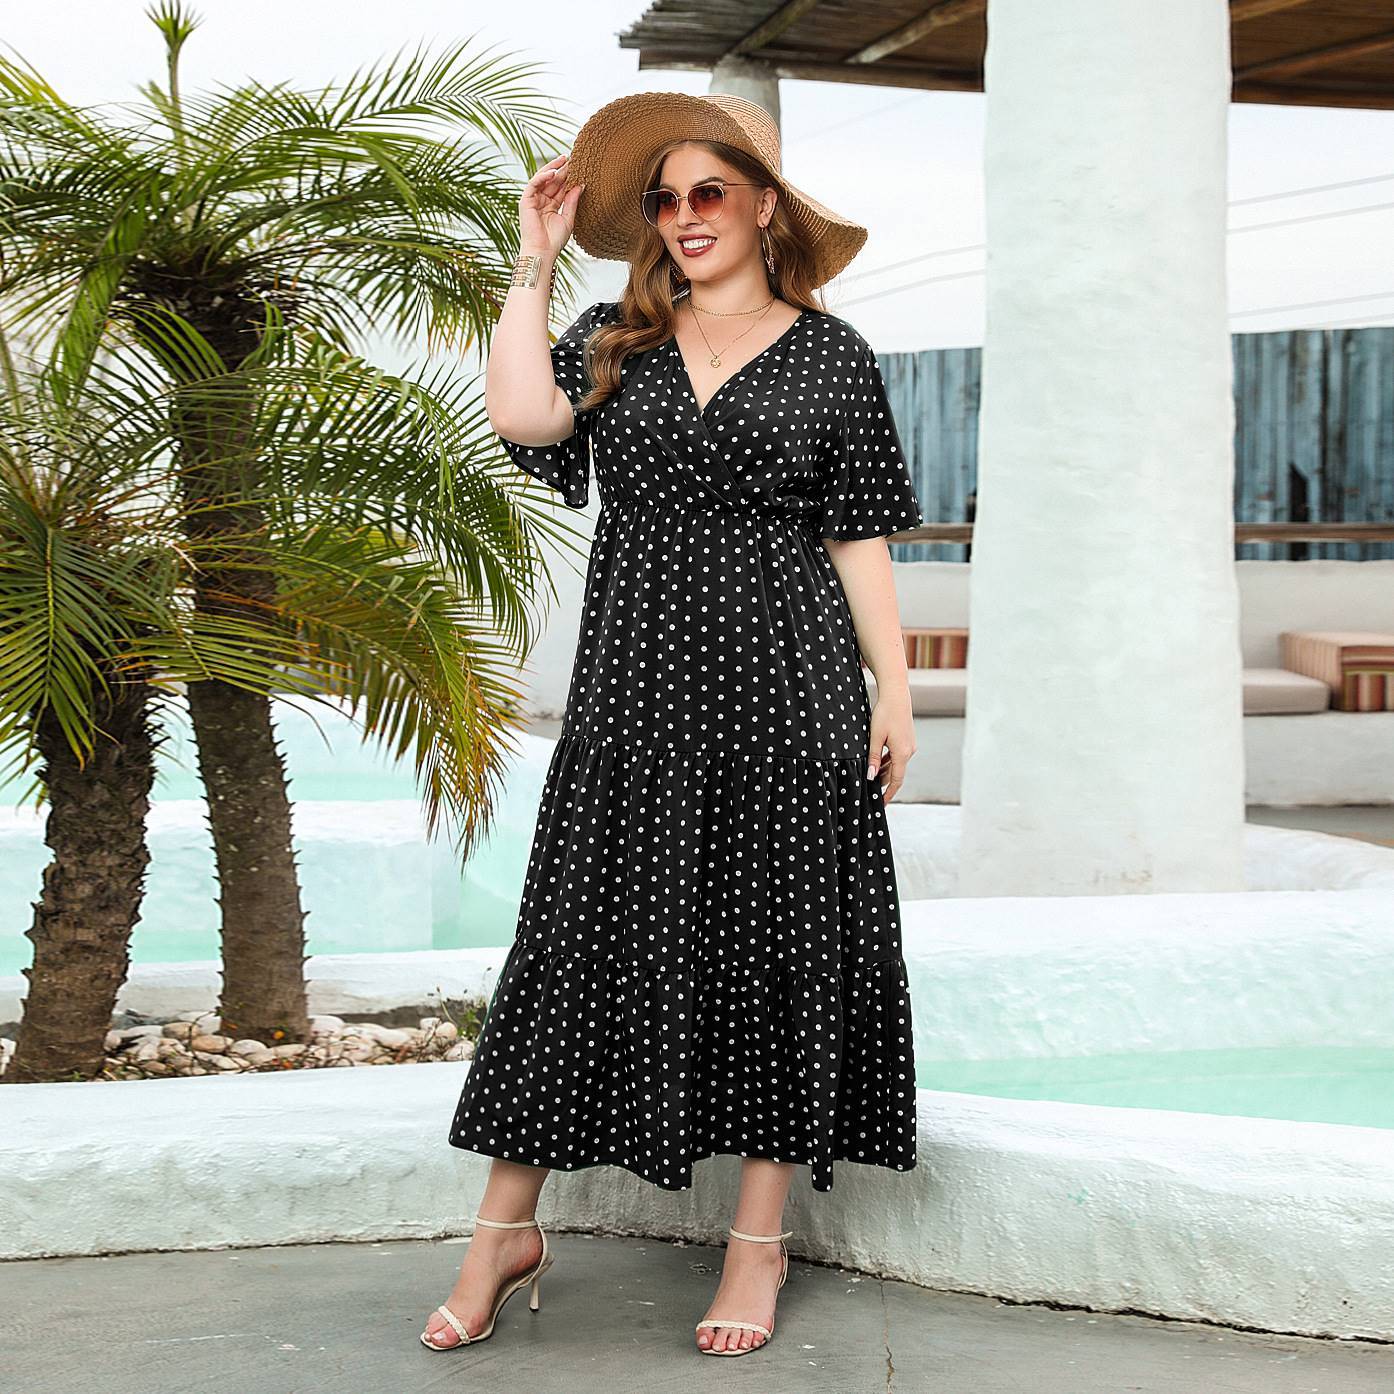 Plus-size Women's Polka Dot Dress